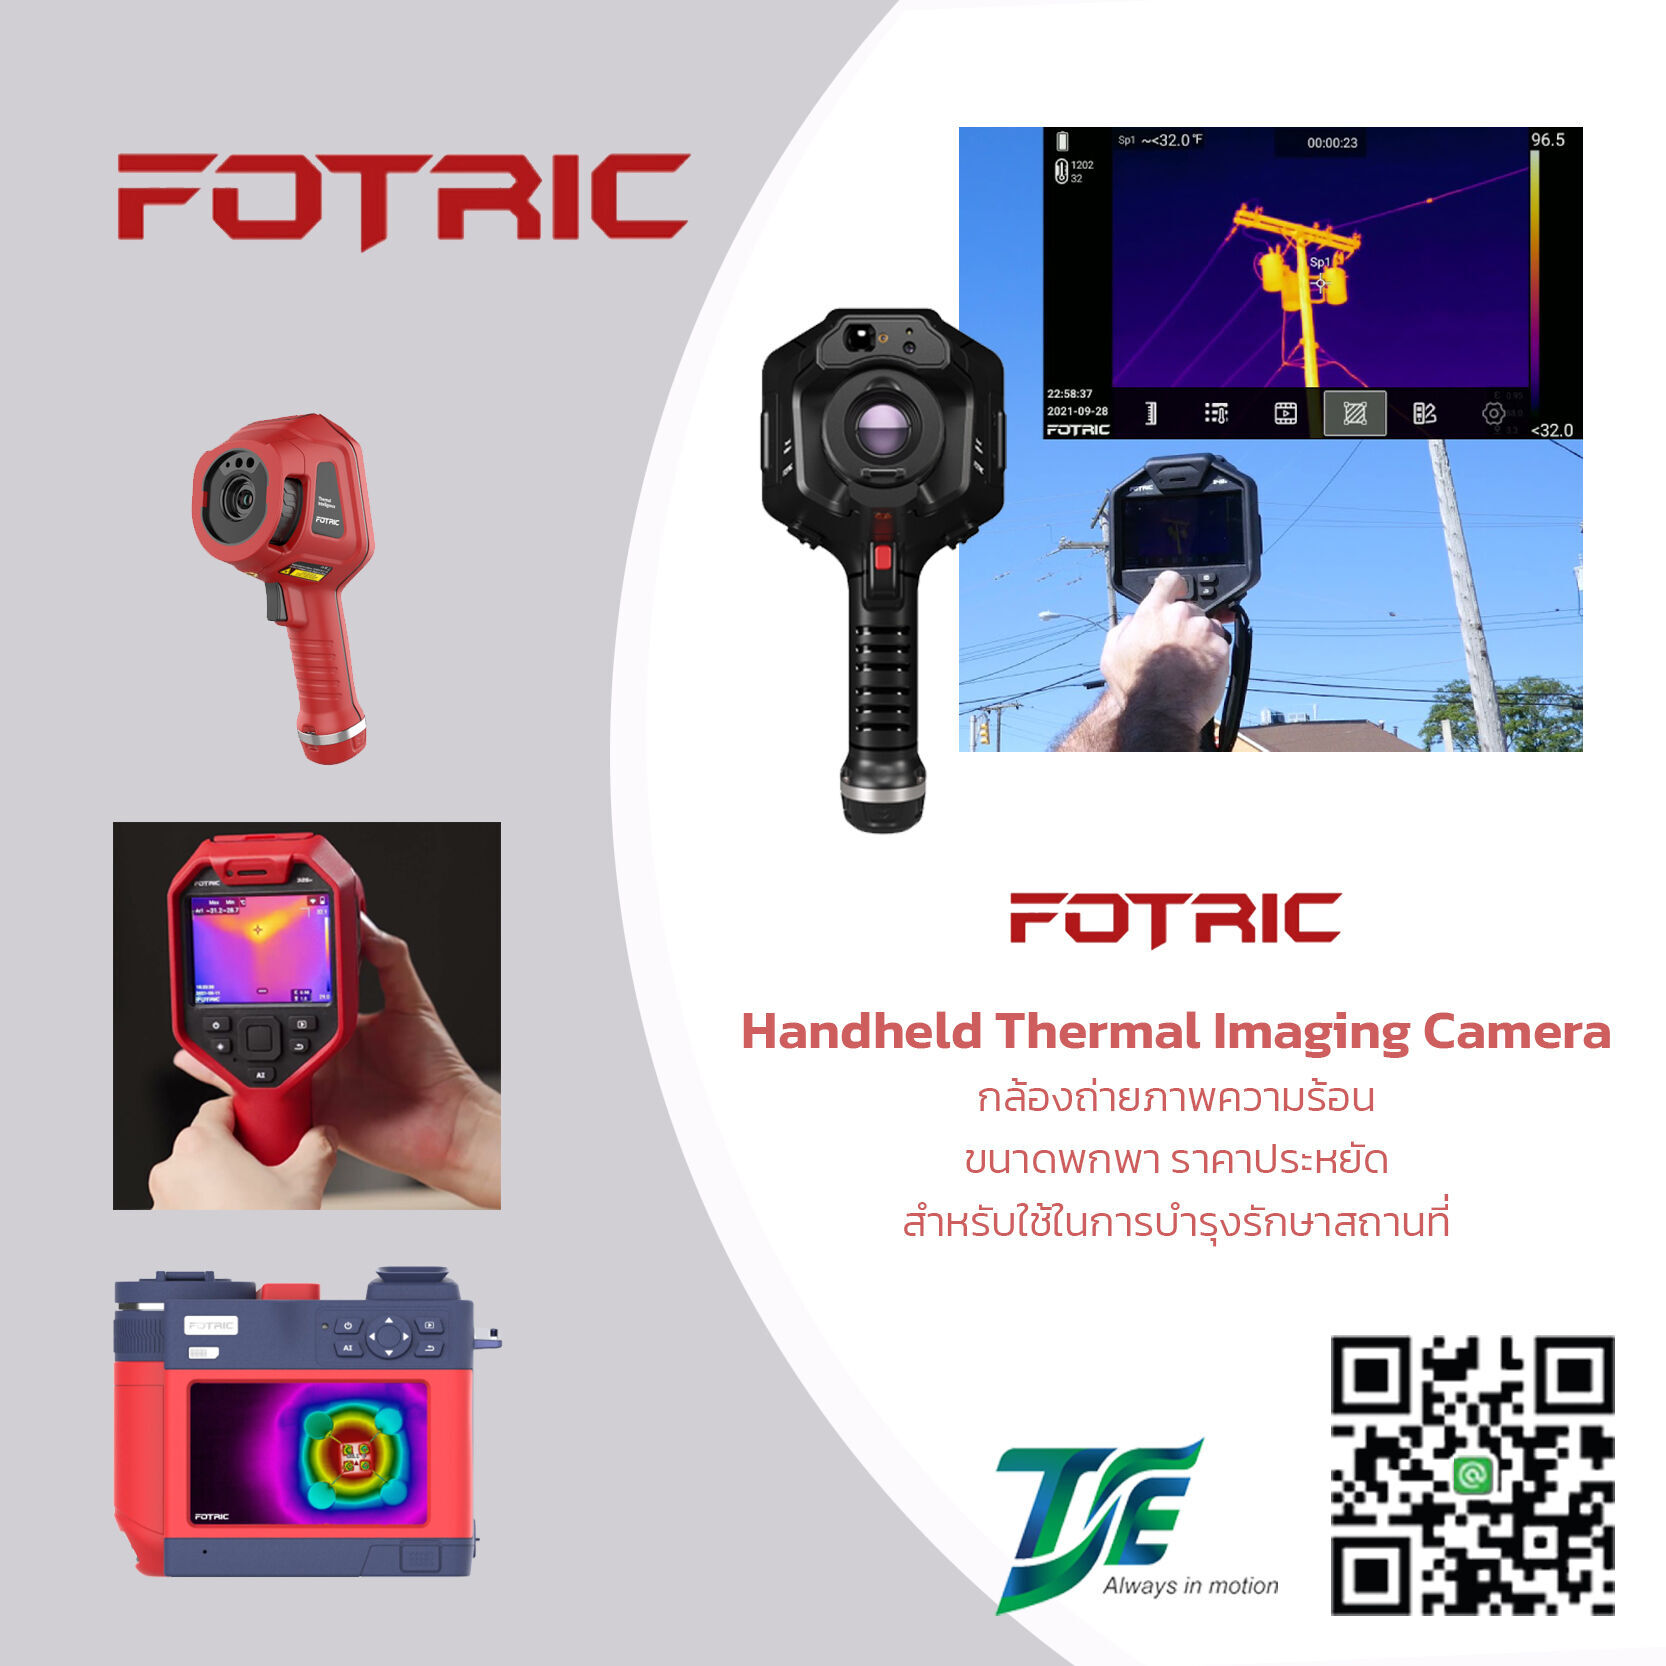 Handheld thermal imaging camera กล้องถ่ายภาพความร้อนขนาดพกพา ราคาประหยัด สำหรับใช้ในการบำรุงรักษาสถานที่